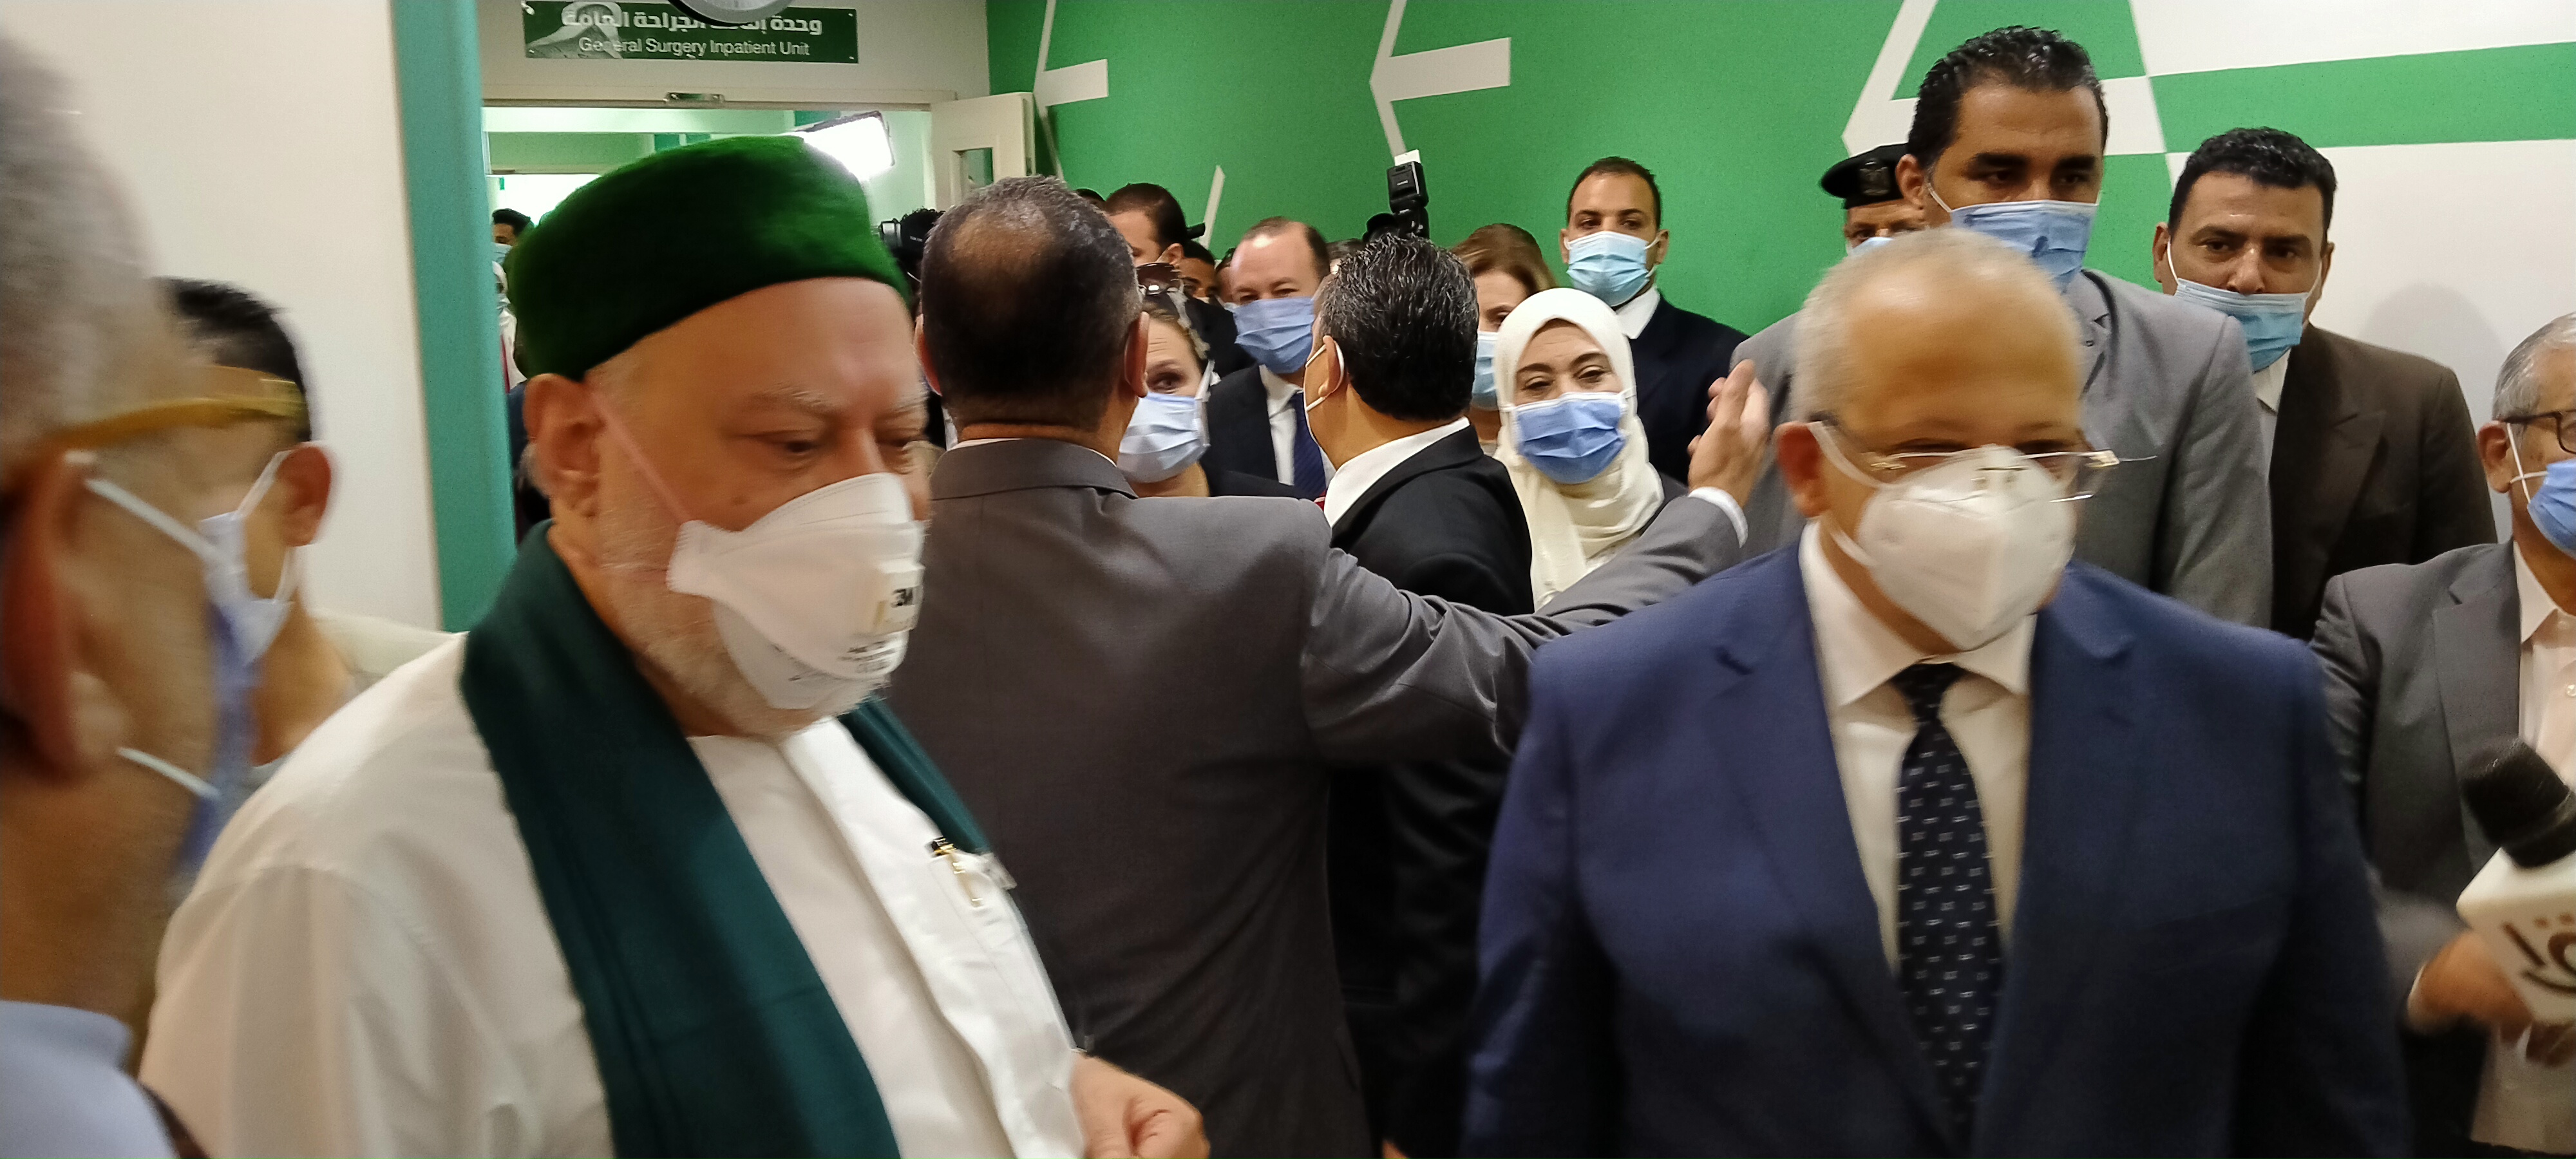 افتتاح وحدات طبية بمستشفيات أبو الريش المنيرة واليابانى (5)